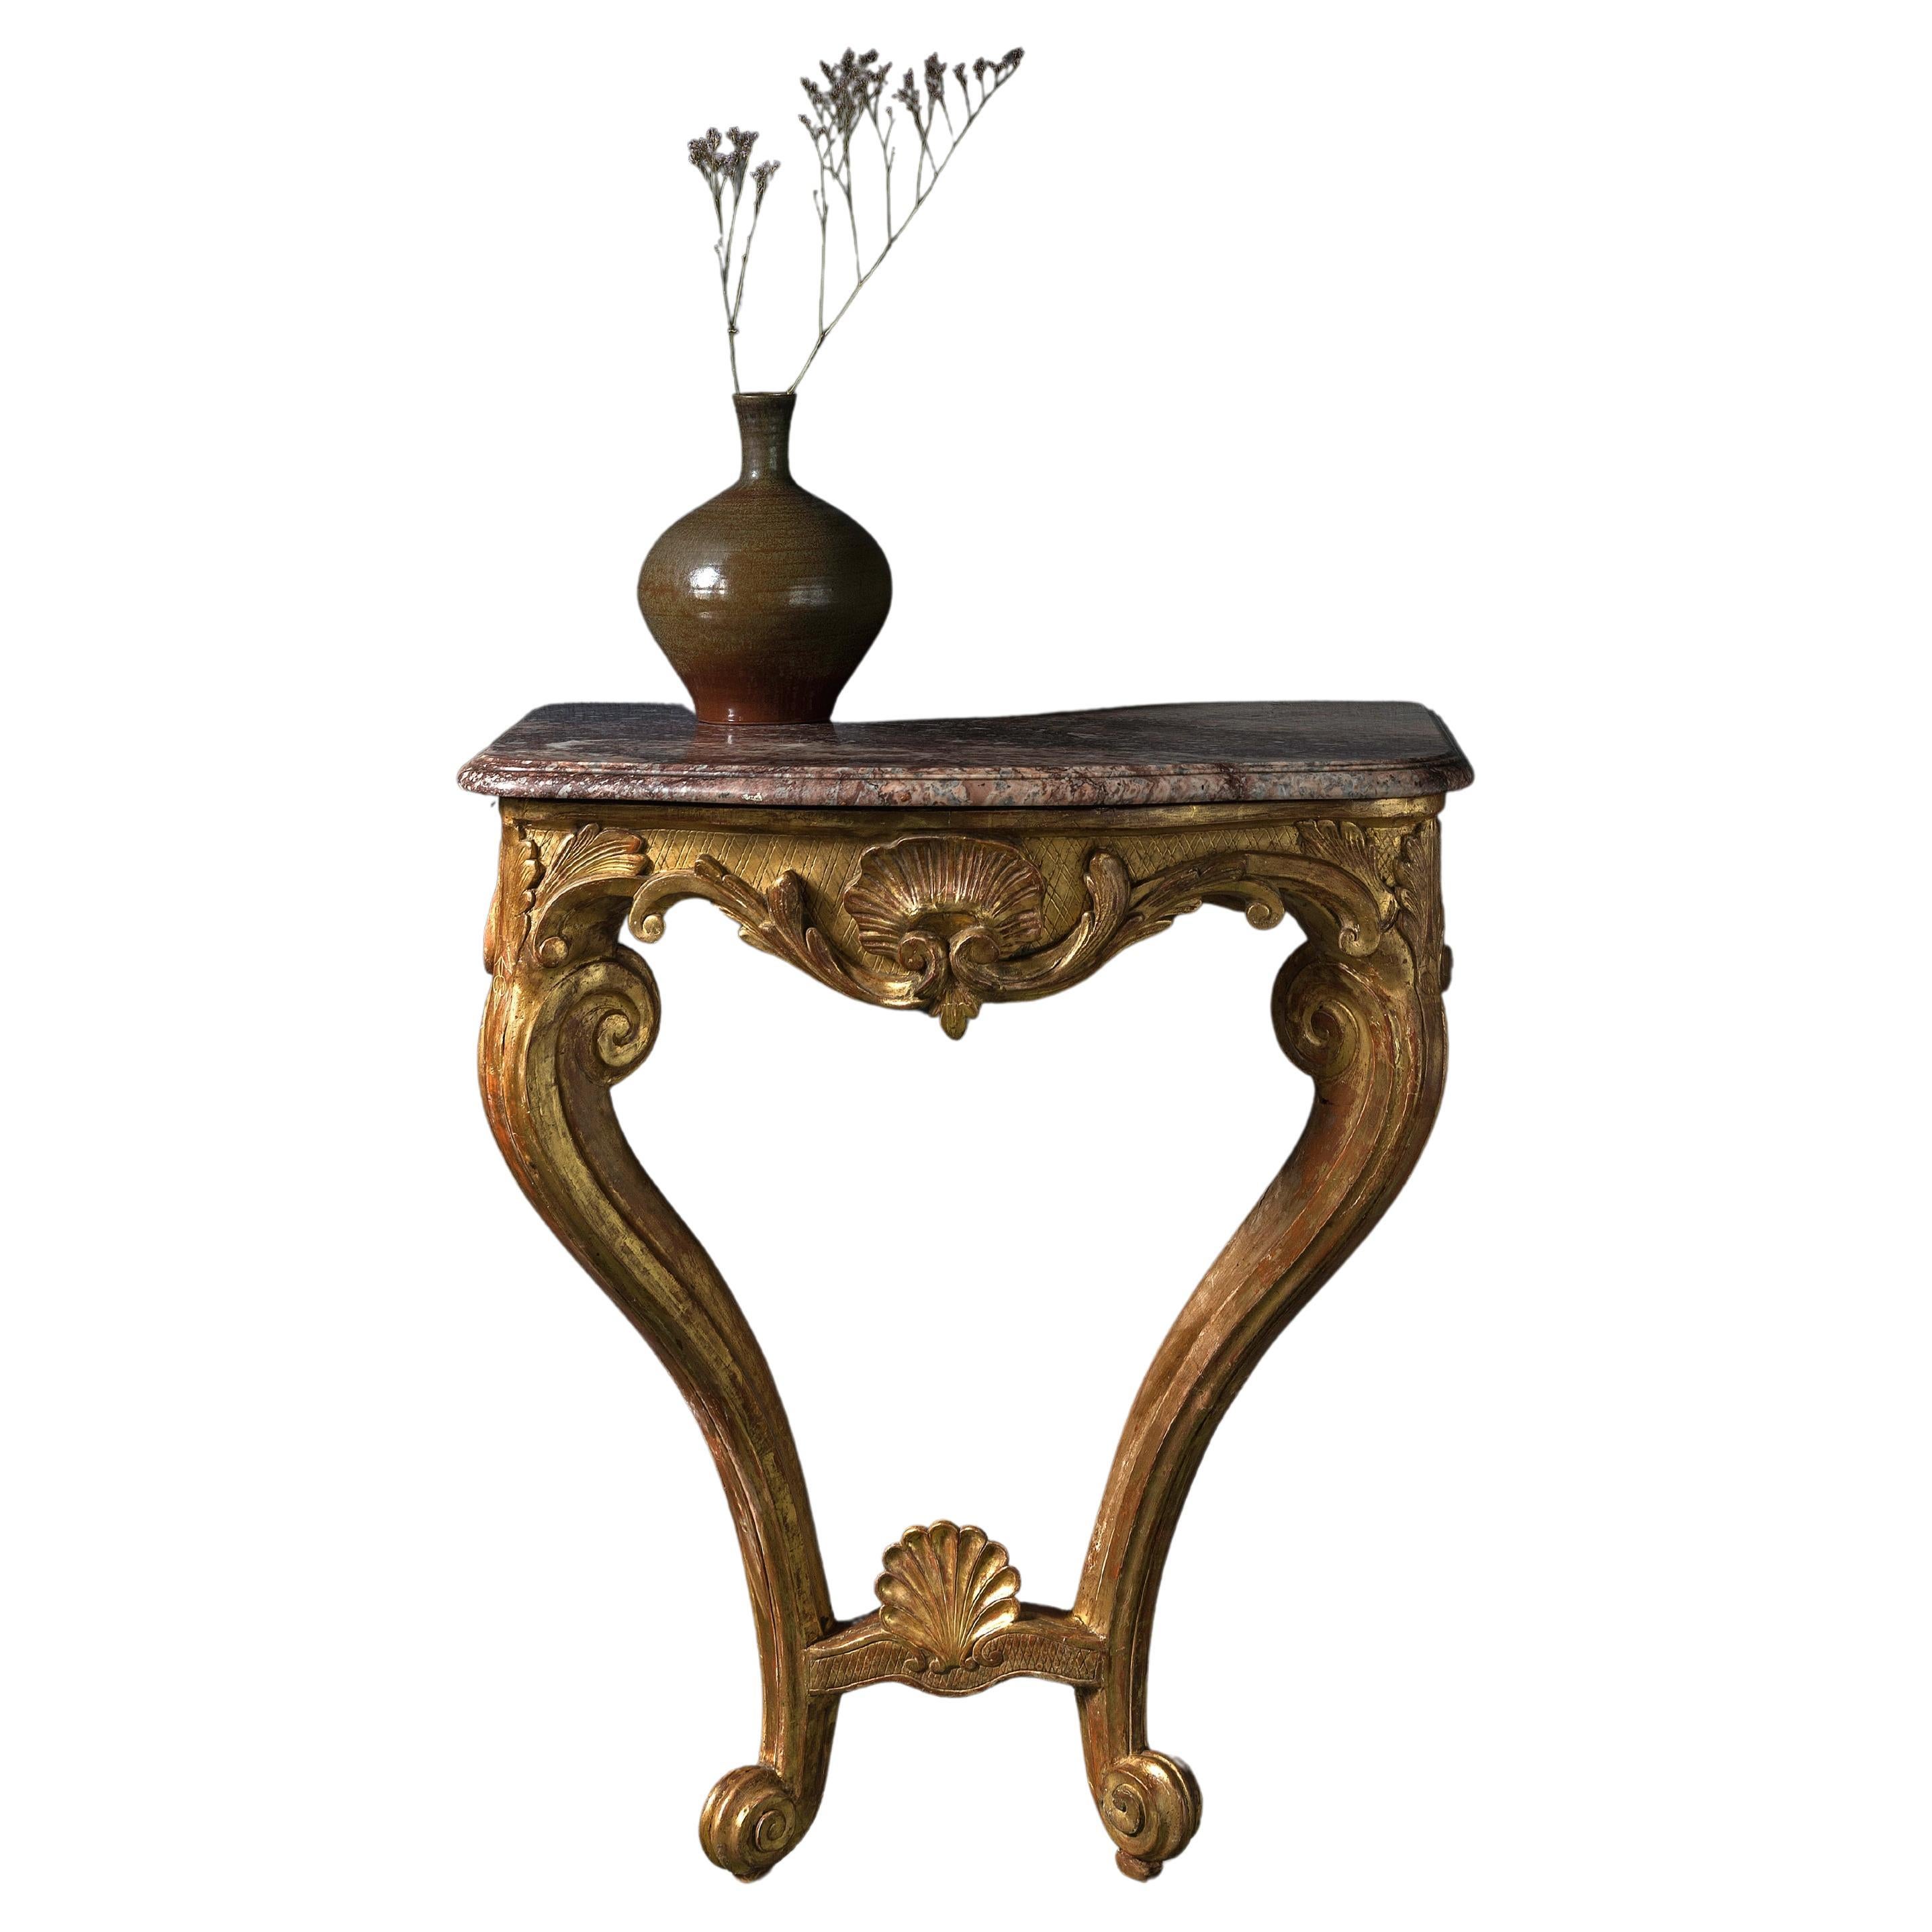 Très élégante console en bois doré sculpté du 18e-19e siècle avec plateau en marbre.